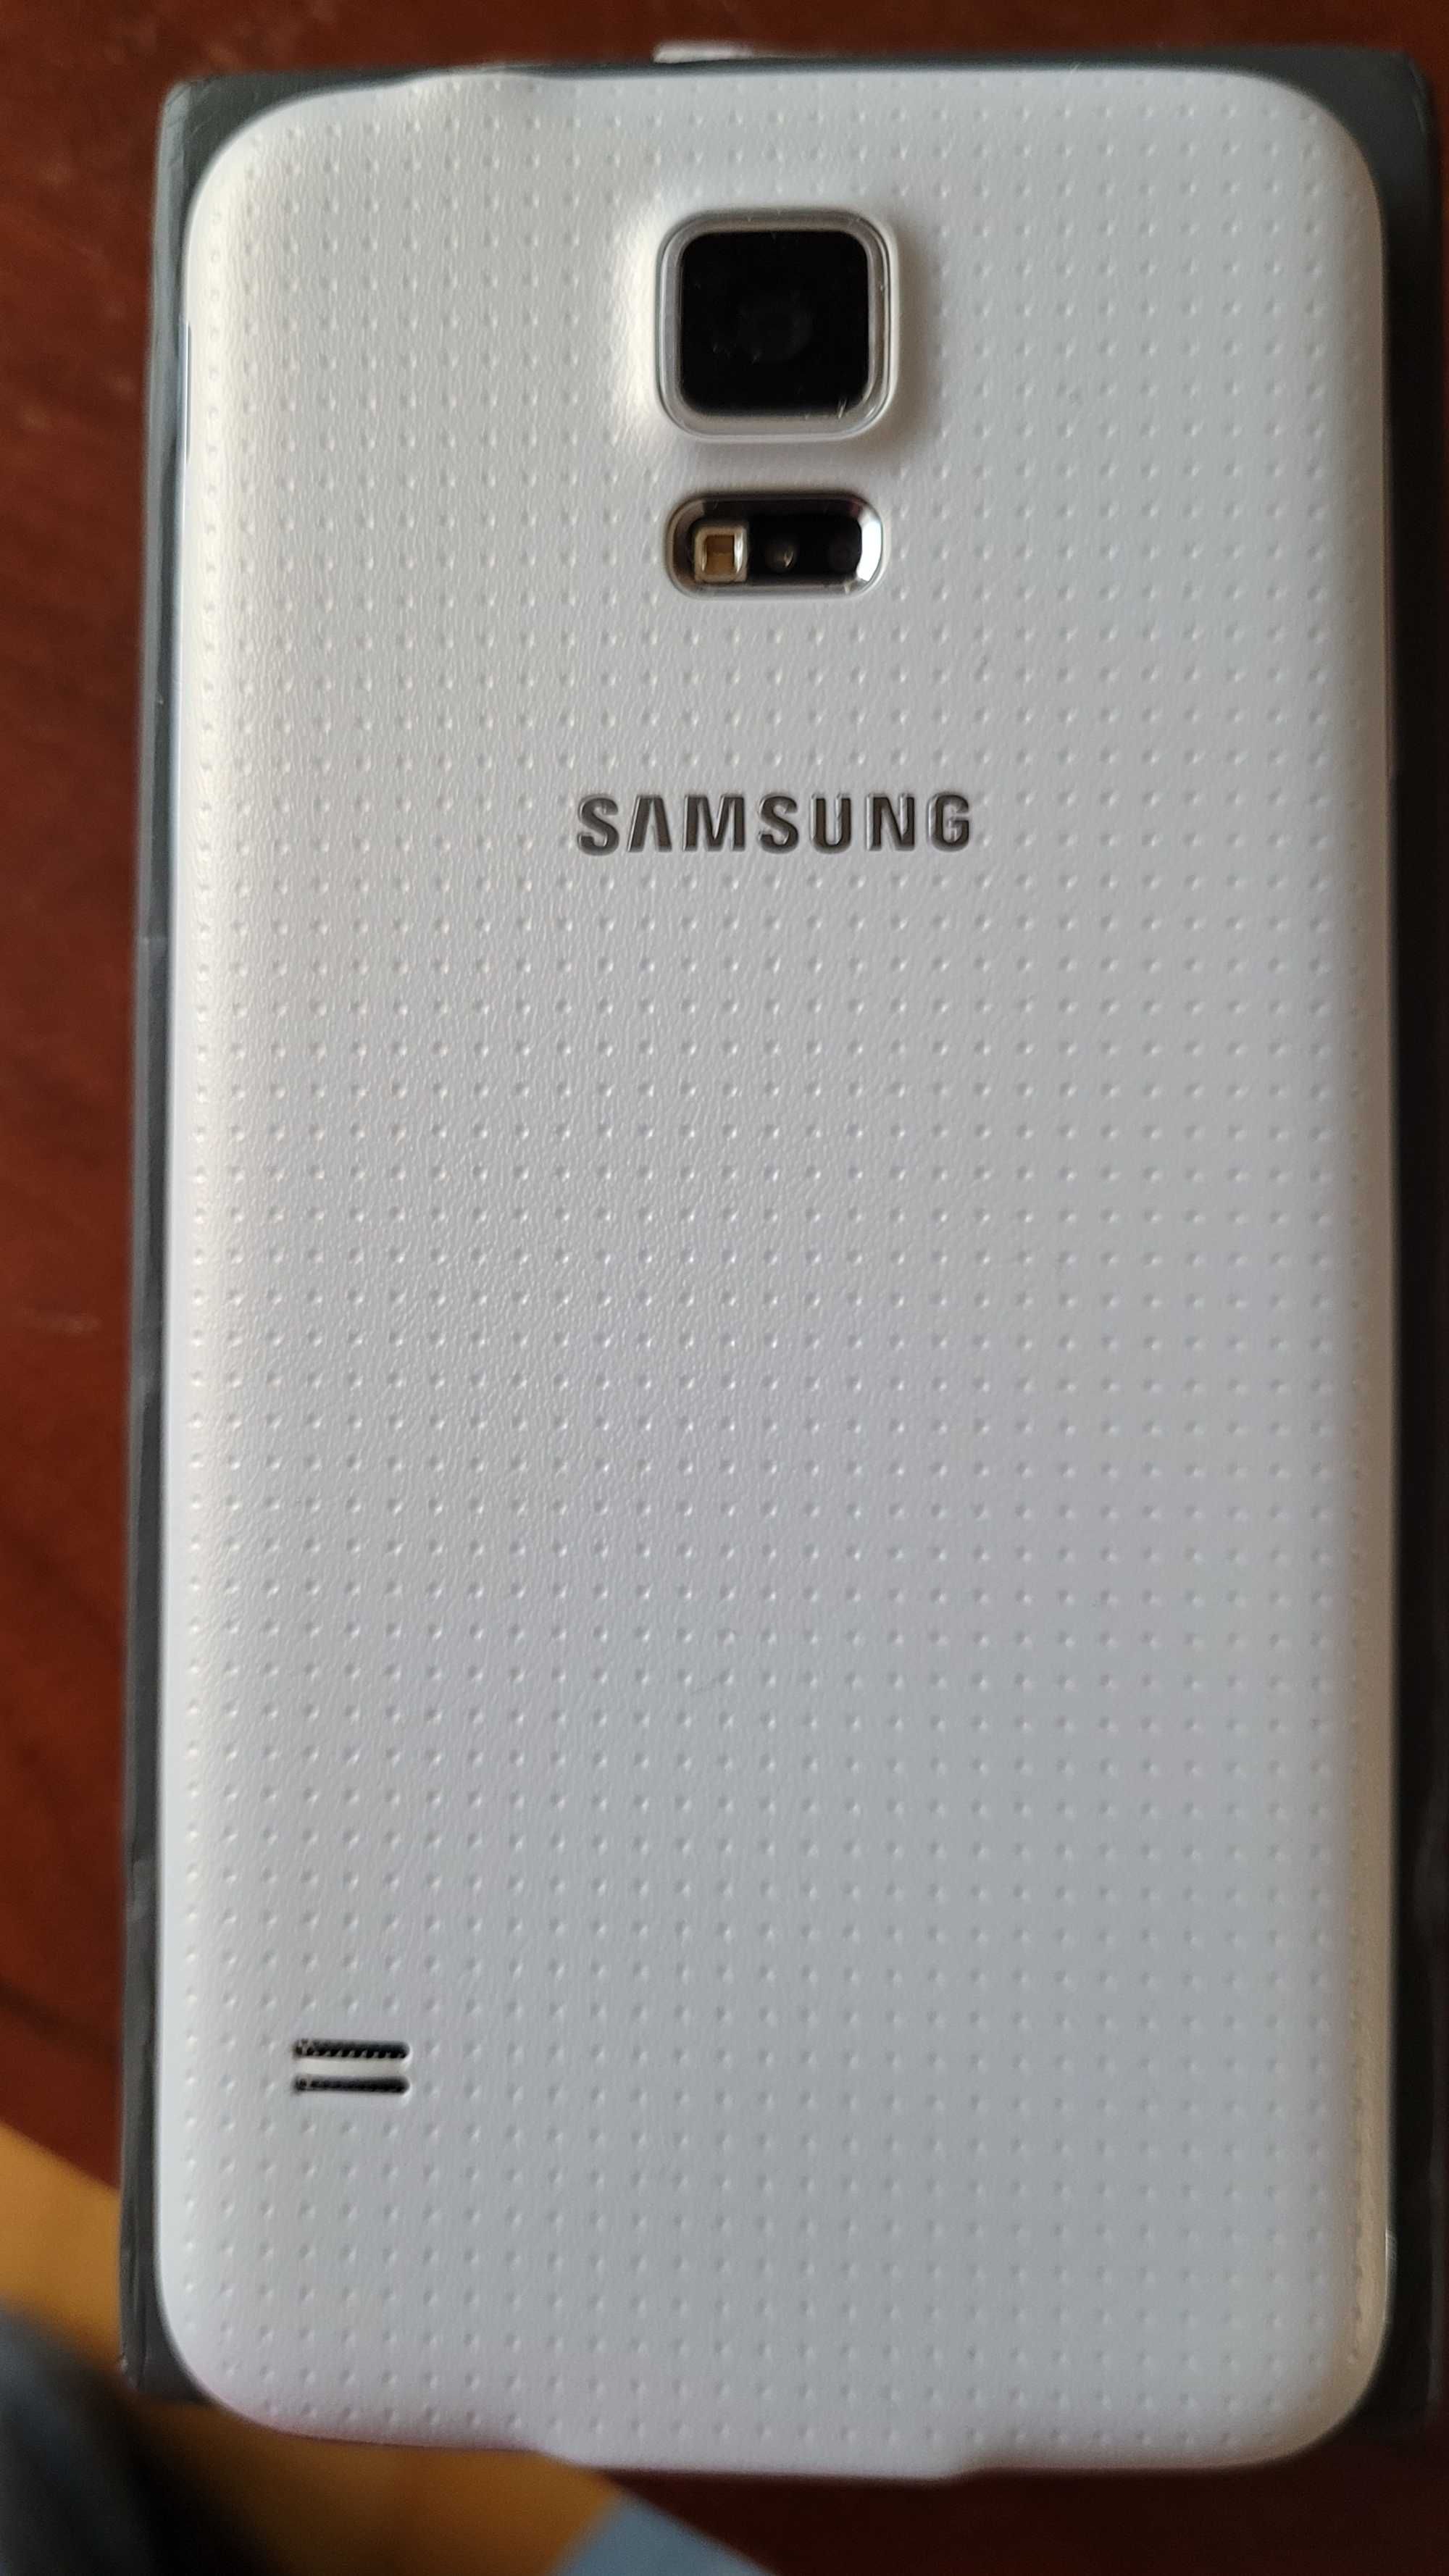 Samsung Galaxy S5 LTE SM-G900F Biały/Czarny/Złoty NOWY